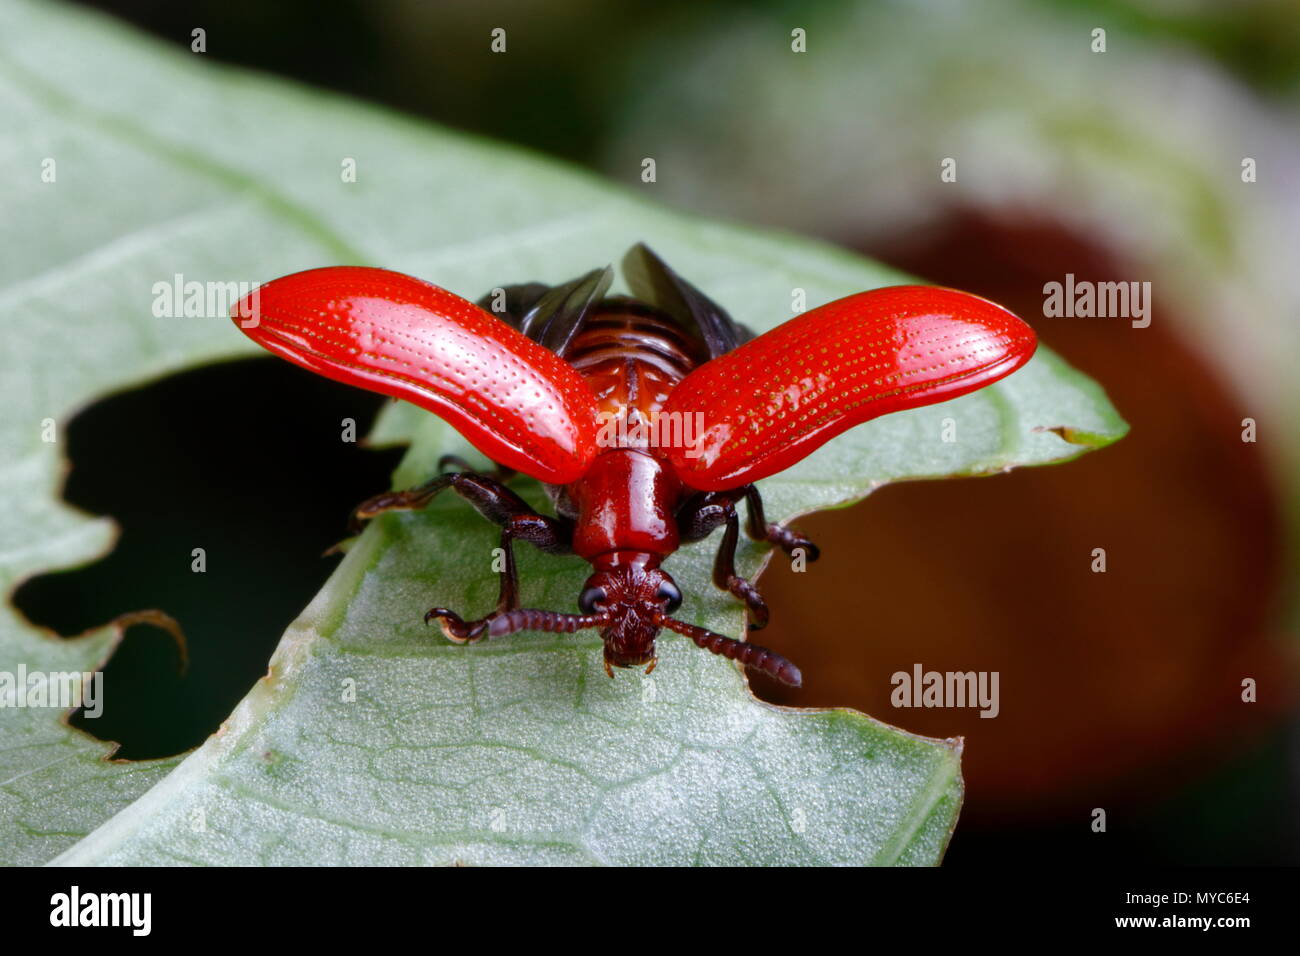 Un aire potato leaf beetle, Lilioceris cheni, cazando un aire hoja de patata. Foto de stock